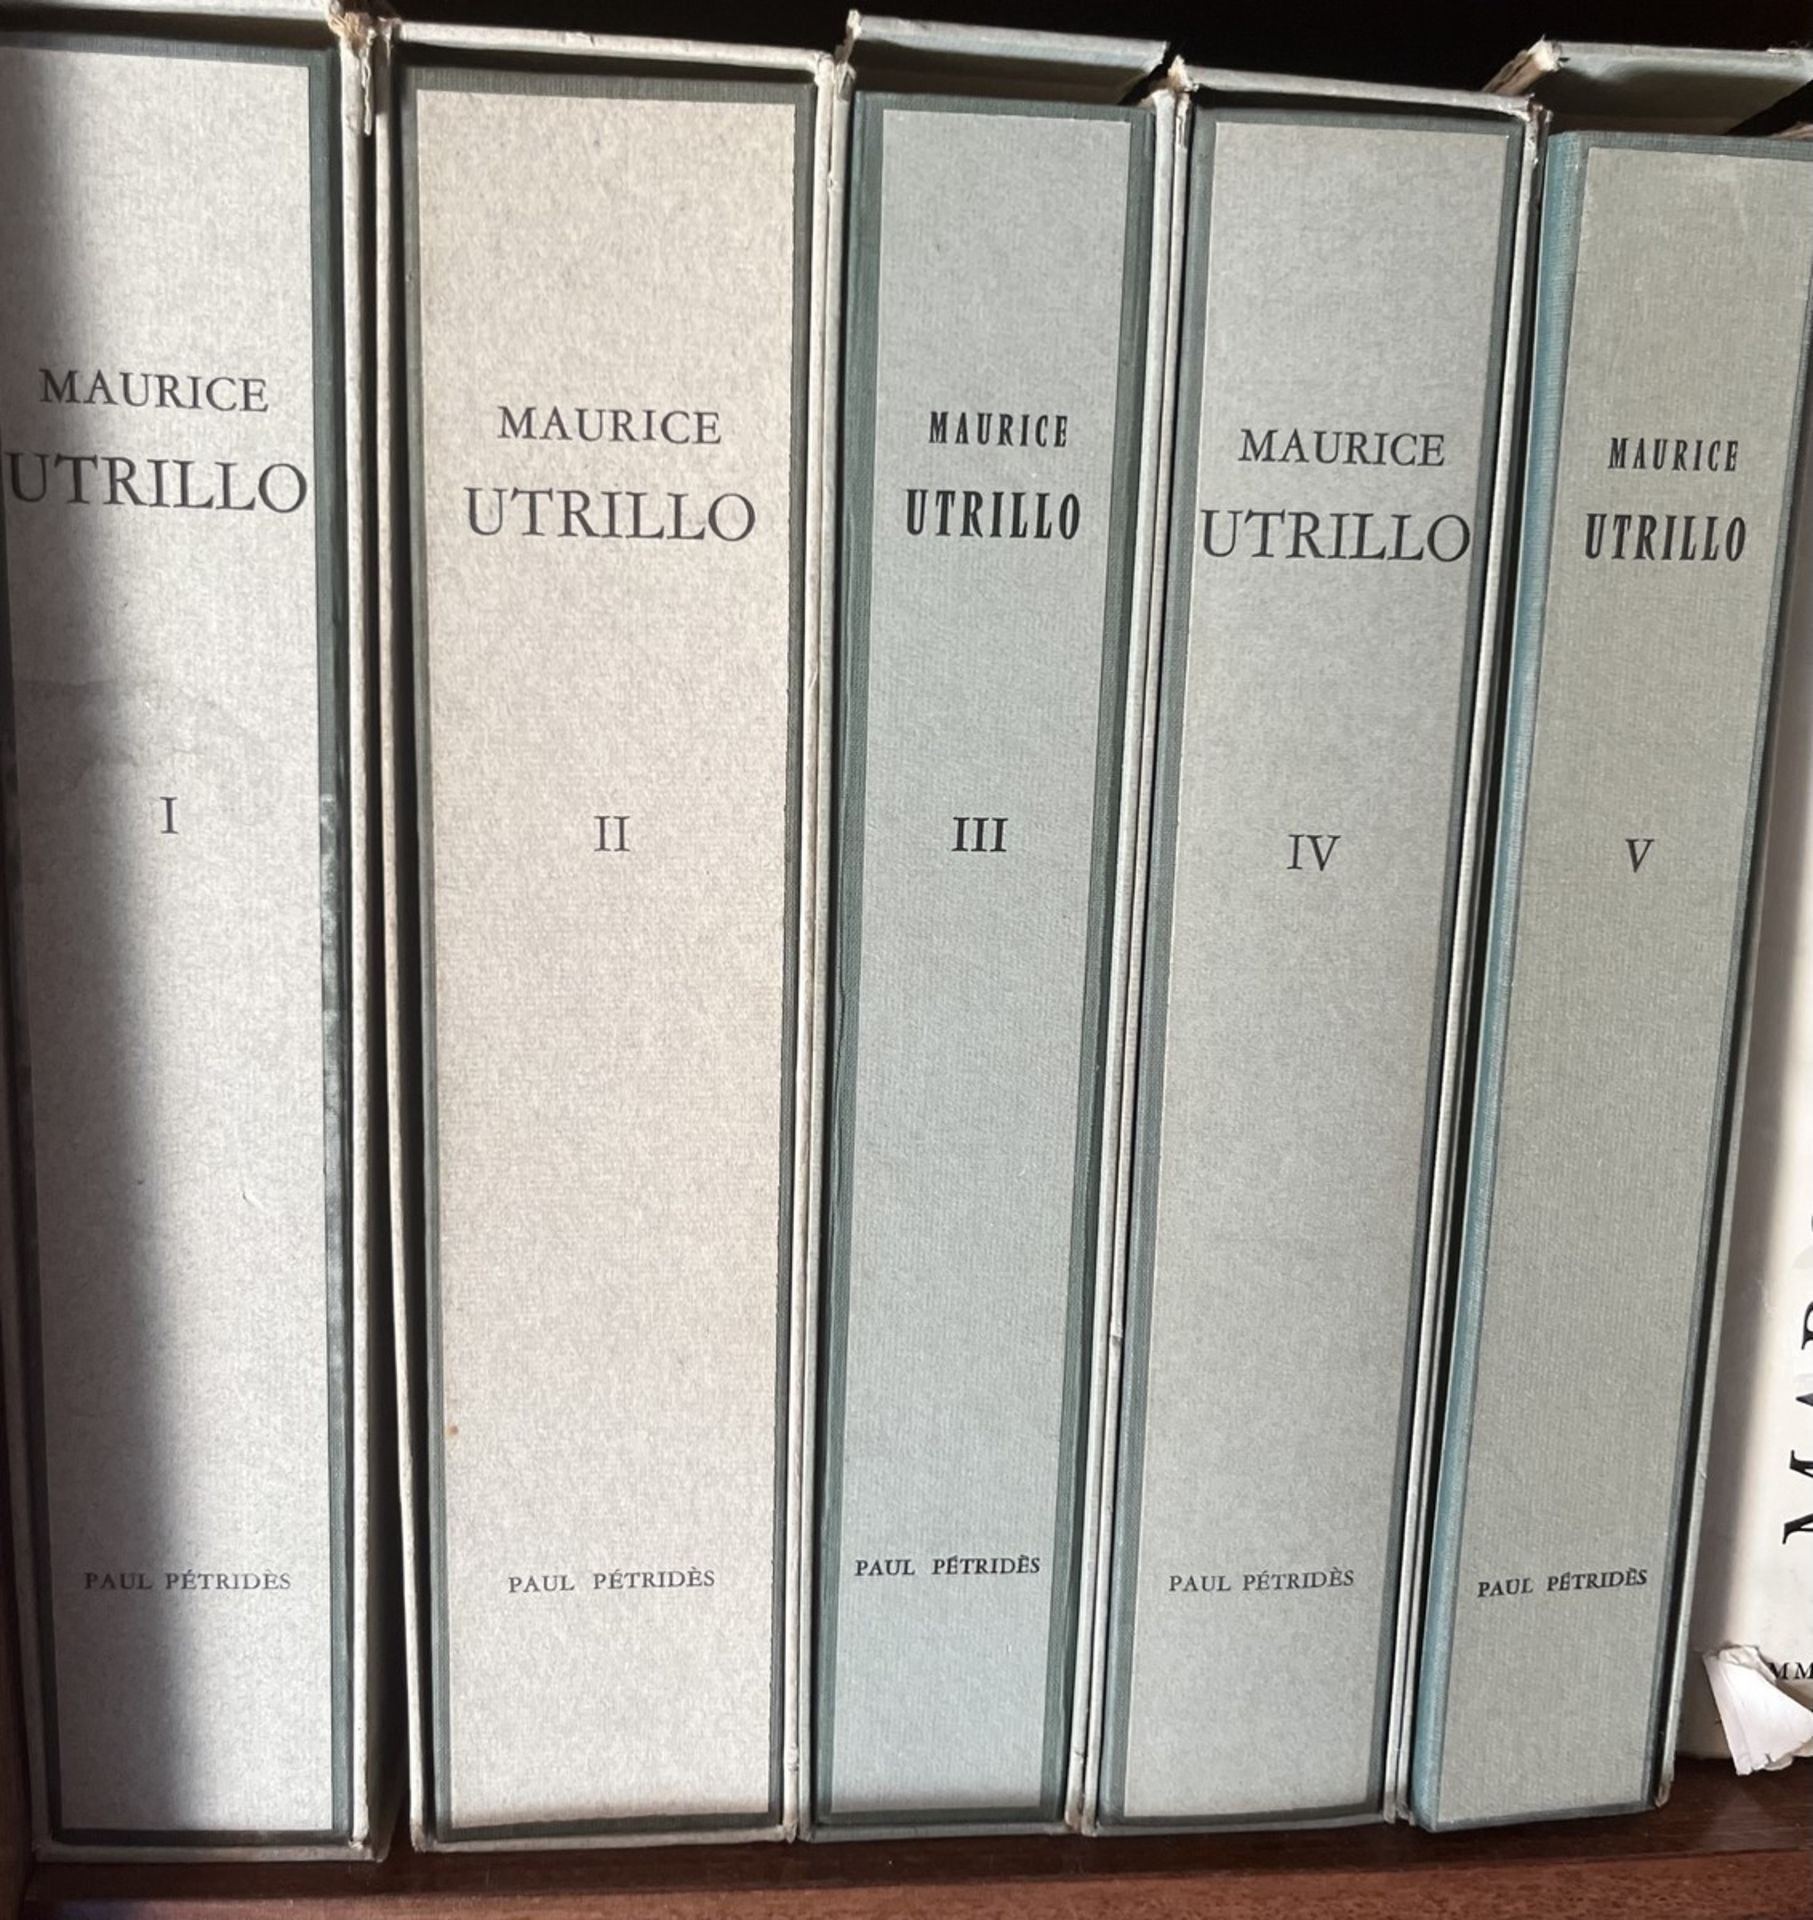 [MAURICE UTRILLO]. L'Œuvre Complet de Maurice Utrillo Volume I à V. Paul Pétridès Editeur, Paris 196 - Bild 2 aus 3